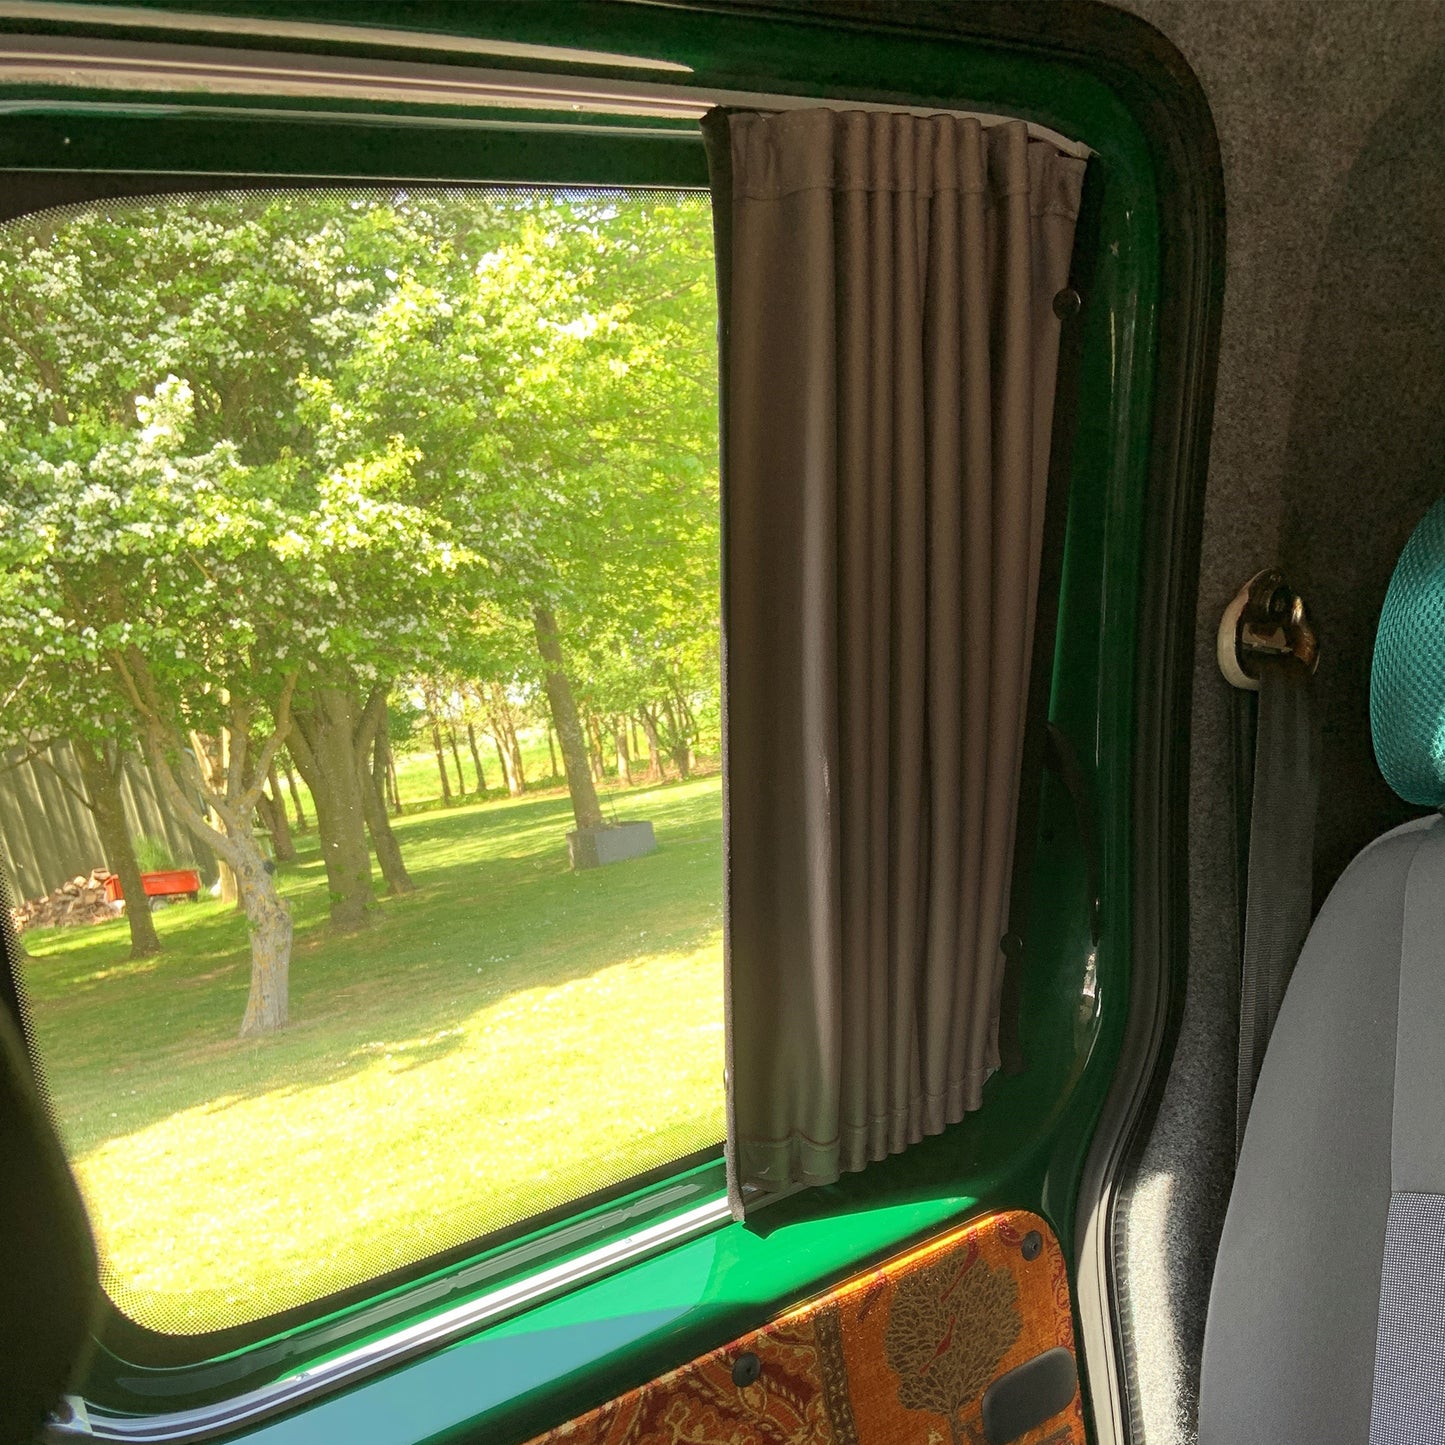 Für VW Caddy Premium 2 x Seite Schiebetür Fenster Vorhänge Van-X